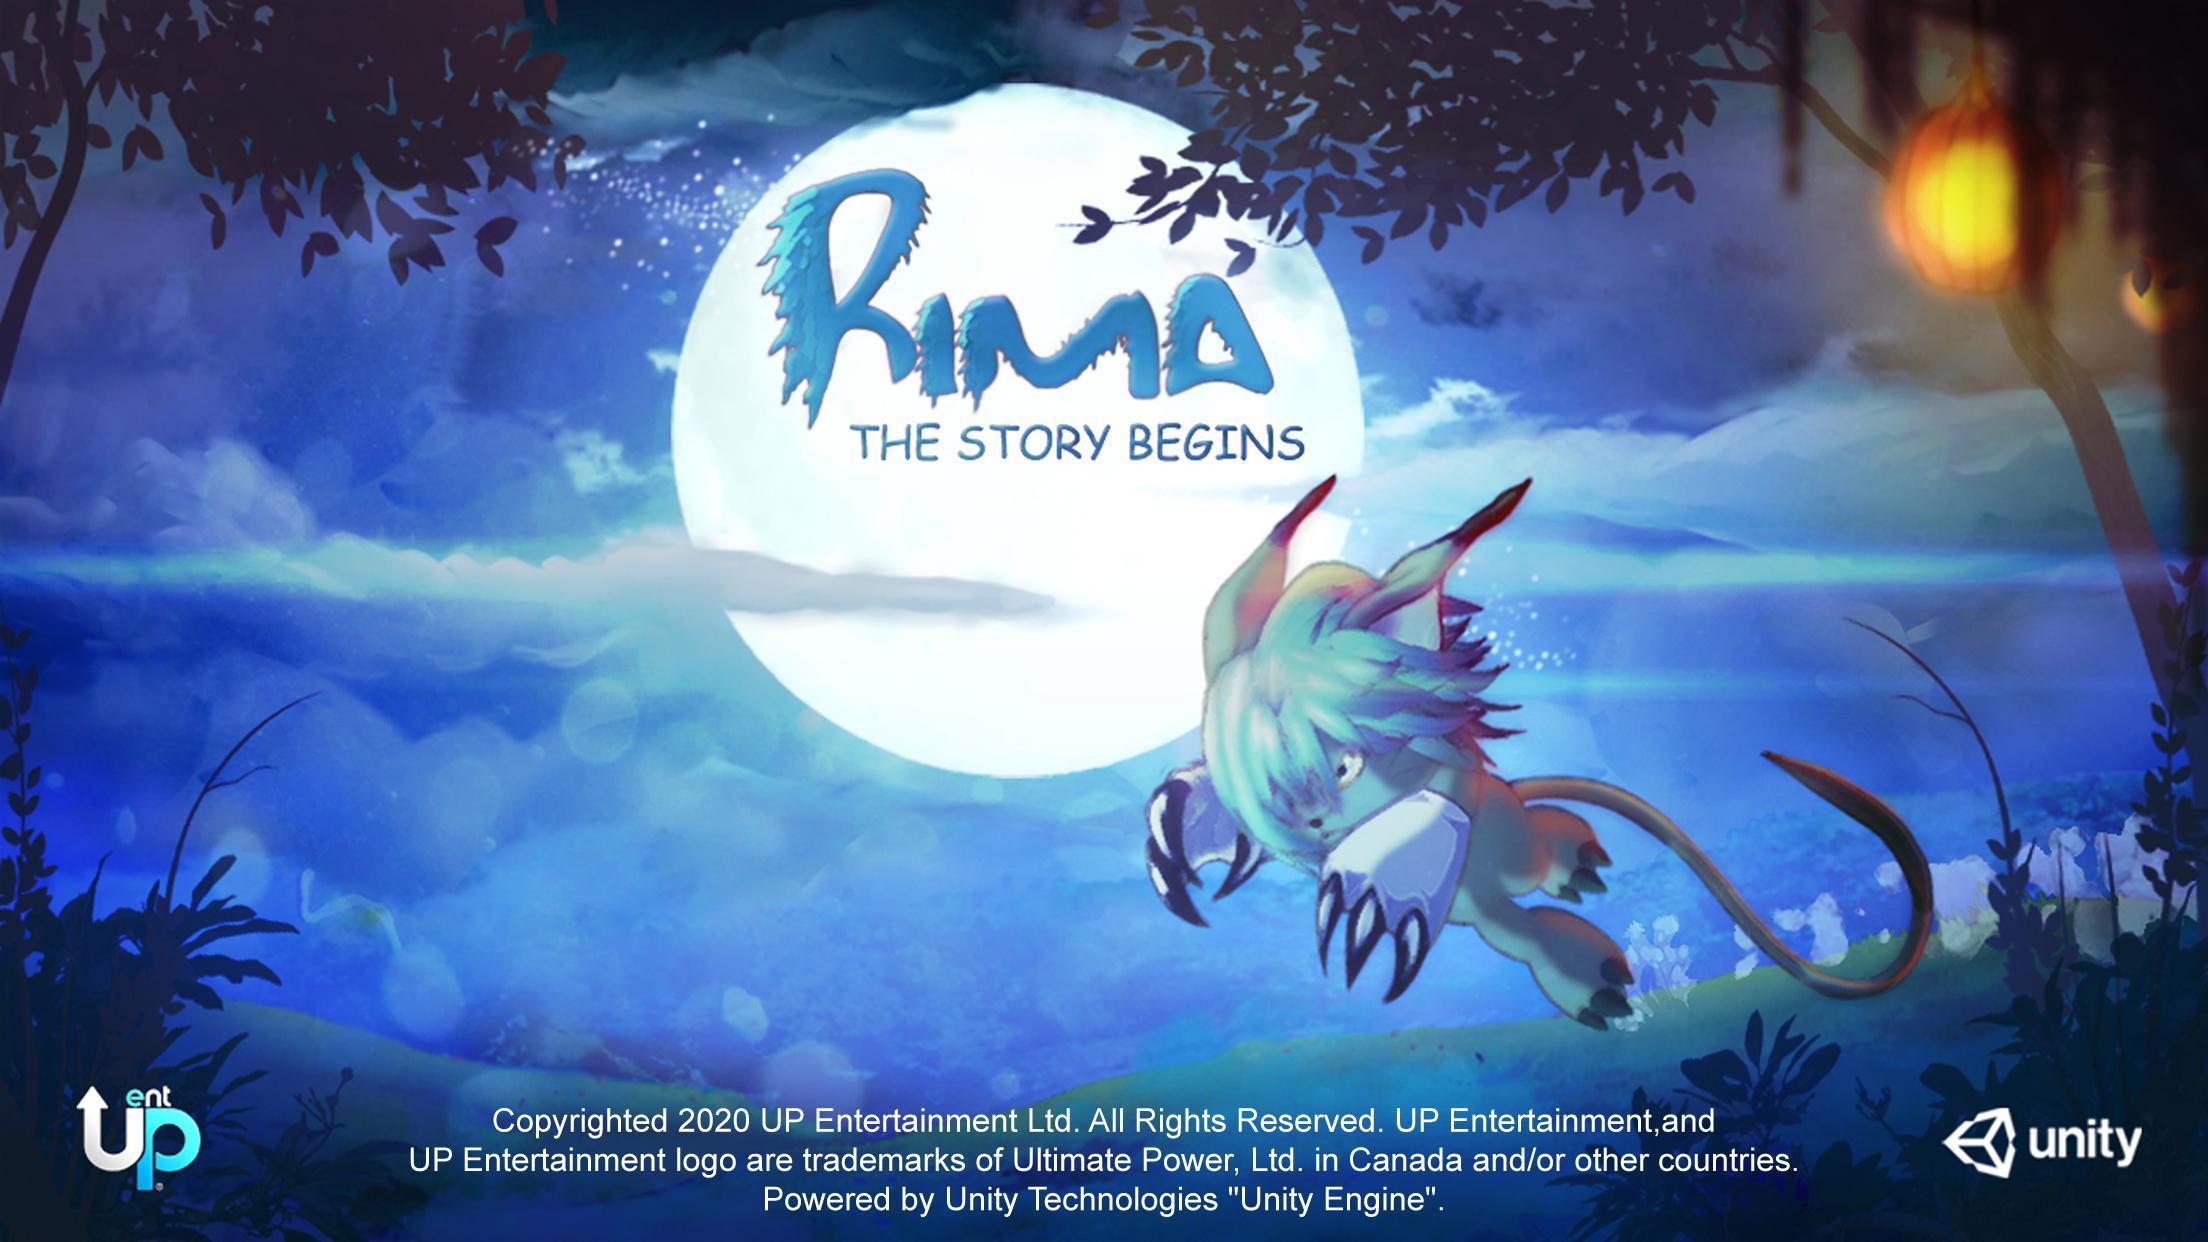 Screenshot 1 of Rima: Kisah Dimulai - Adven 